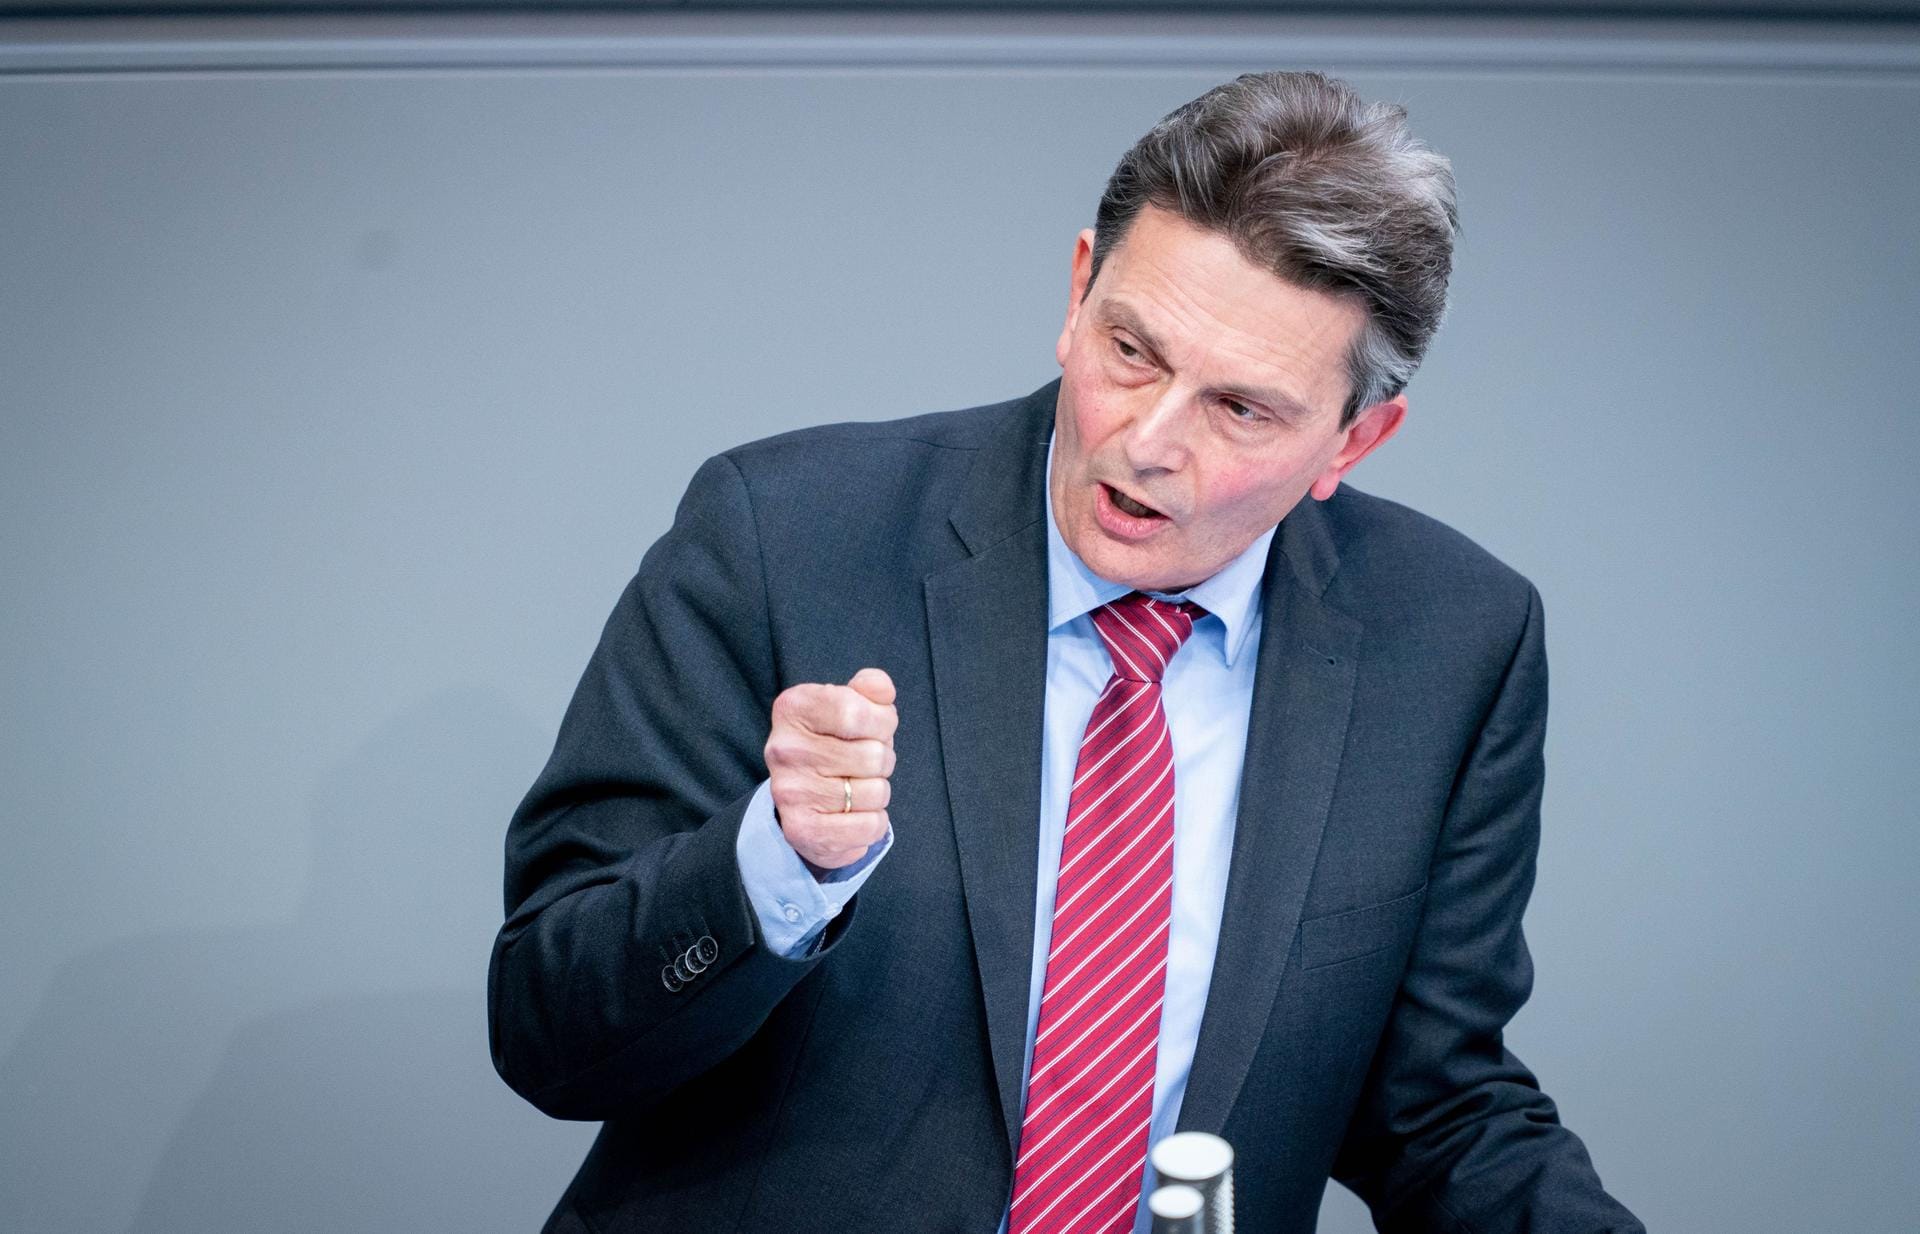 Rolf Mützenich, kommissarischer Fraktionschef der SPD: "Wir müssen versuchen, die Spaltungen, die unsere Wirtschaftsordnung hervorbringt, so klein wie möglich zu halten."